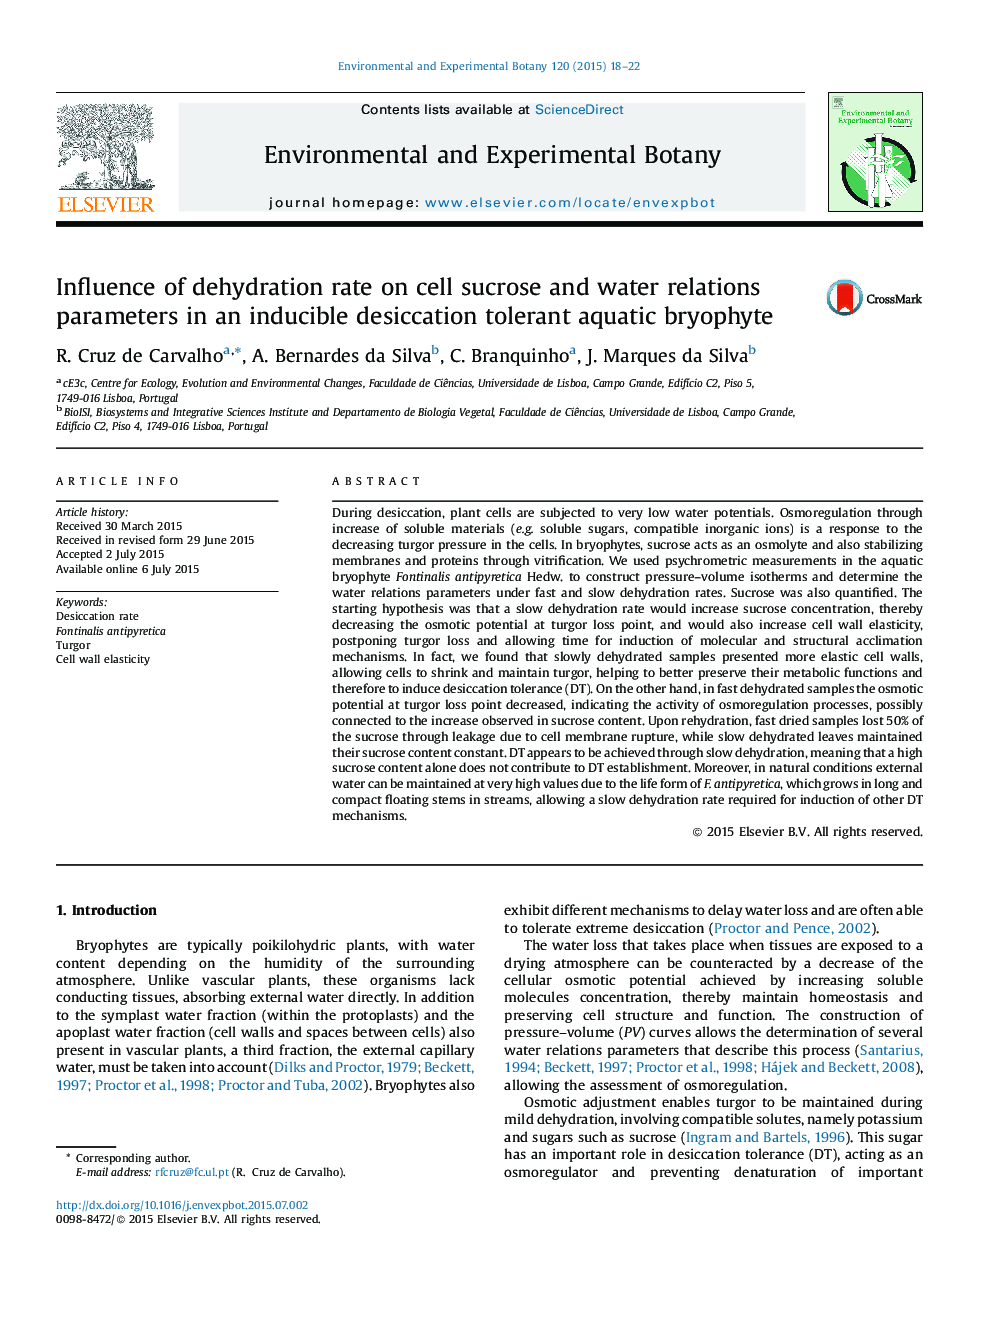 تأثیر میزان کم آبیاری بر پارامترهای روابط سلولی ساکارز و آب در یک بریوفیت آبزی تحمل پذیری قابل تحمل 